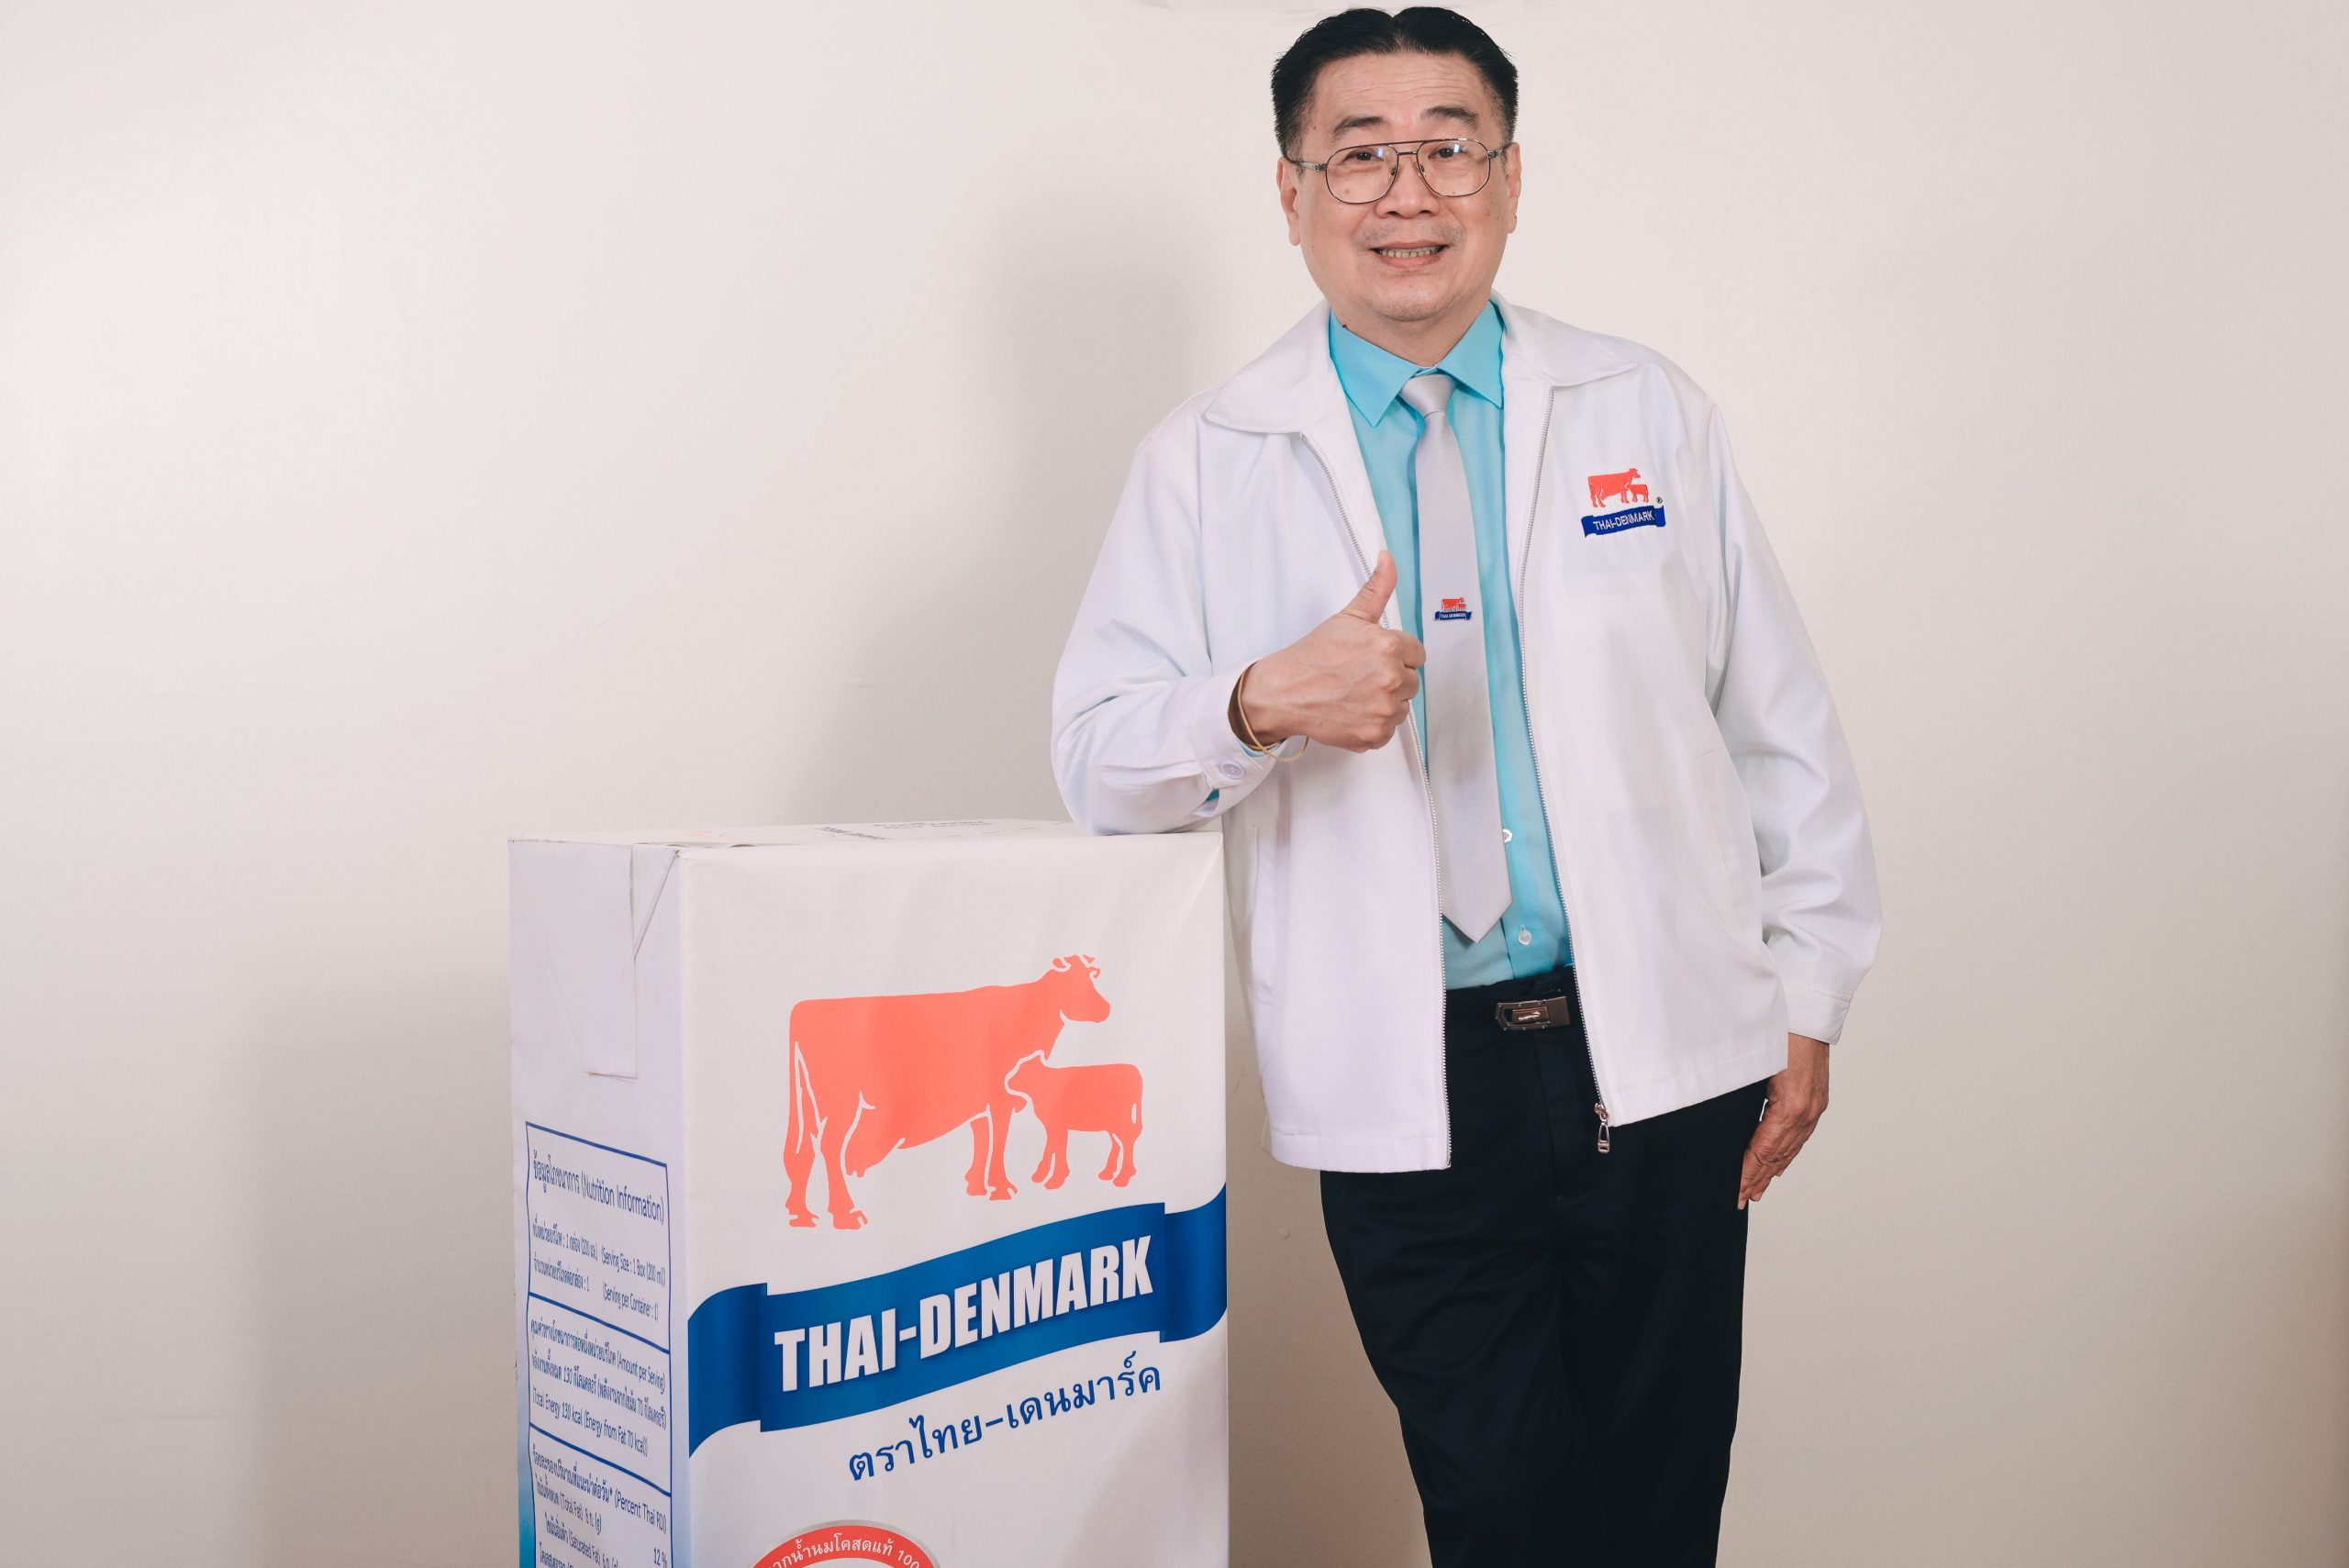 นมไทย-เดนมาร์ครุกหนักตลาดออนไลน์รับ นิว นอร์มอล พร้อมชูจุดขายใช้วัตถุดิบจากนมโคสด 100% ไม่ผสมนมผง